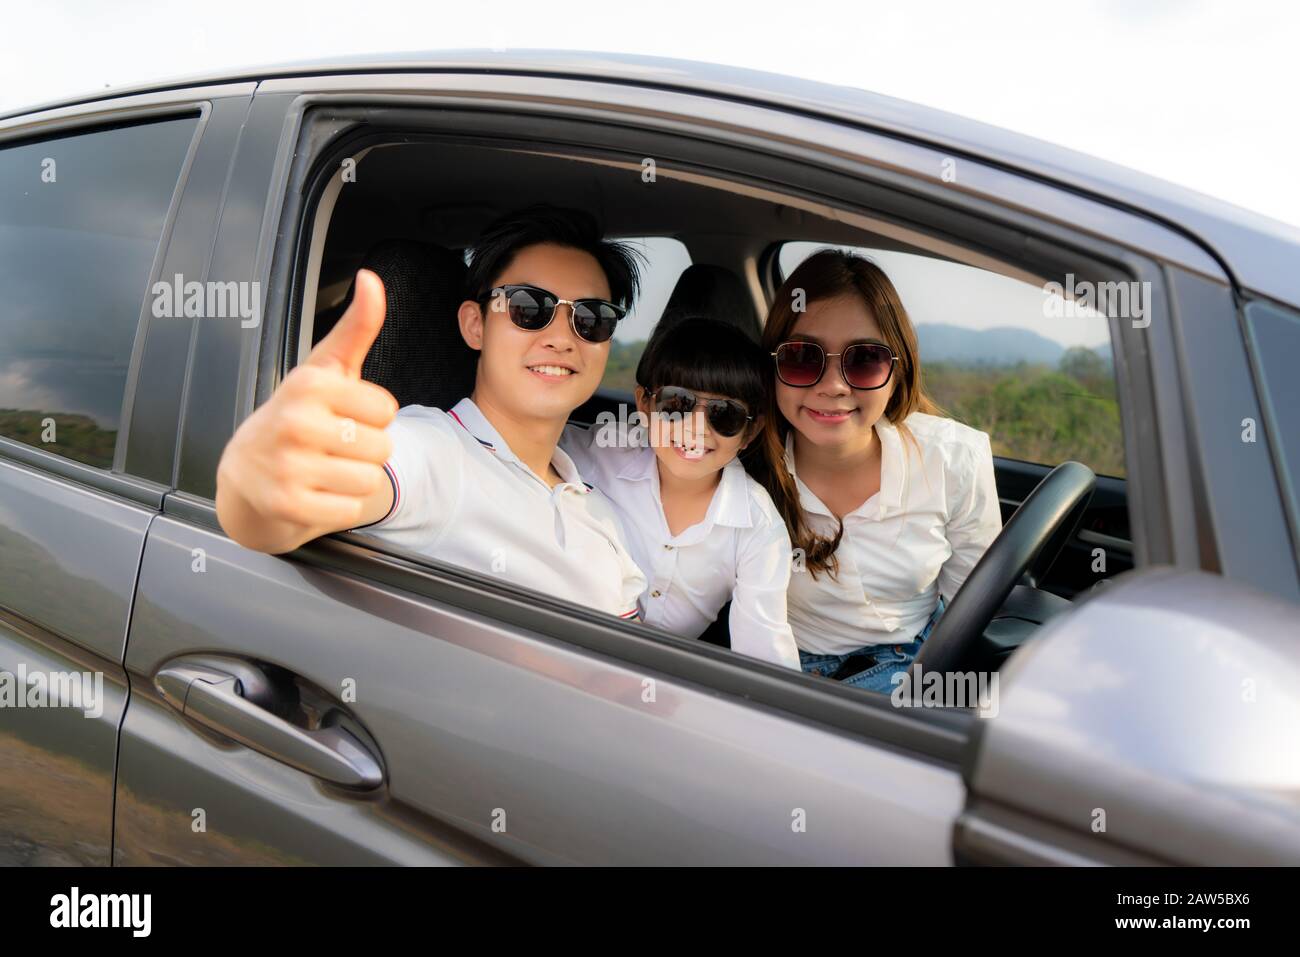 La famiglia asiatica felice con il pollice del padre in su e la madre e la figlia portano il vetro del sole in automobile compatta stanno sorridendo e guidando per viaggiare in vacanza. Auto insur Foto Stock